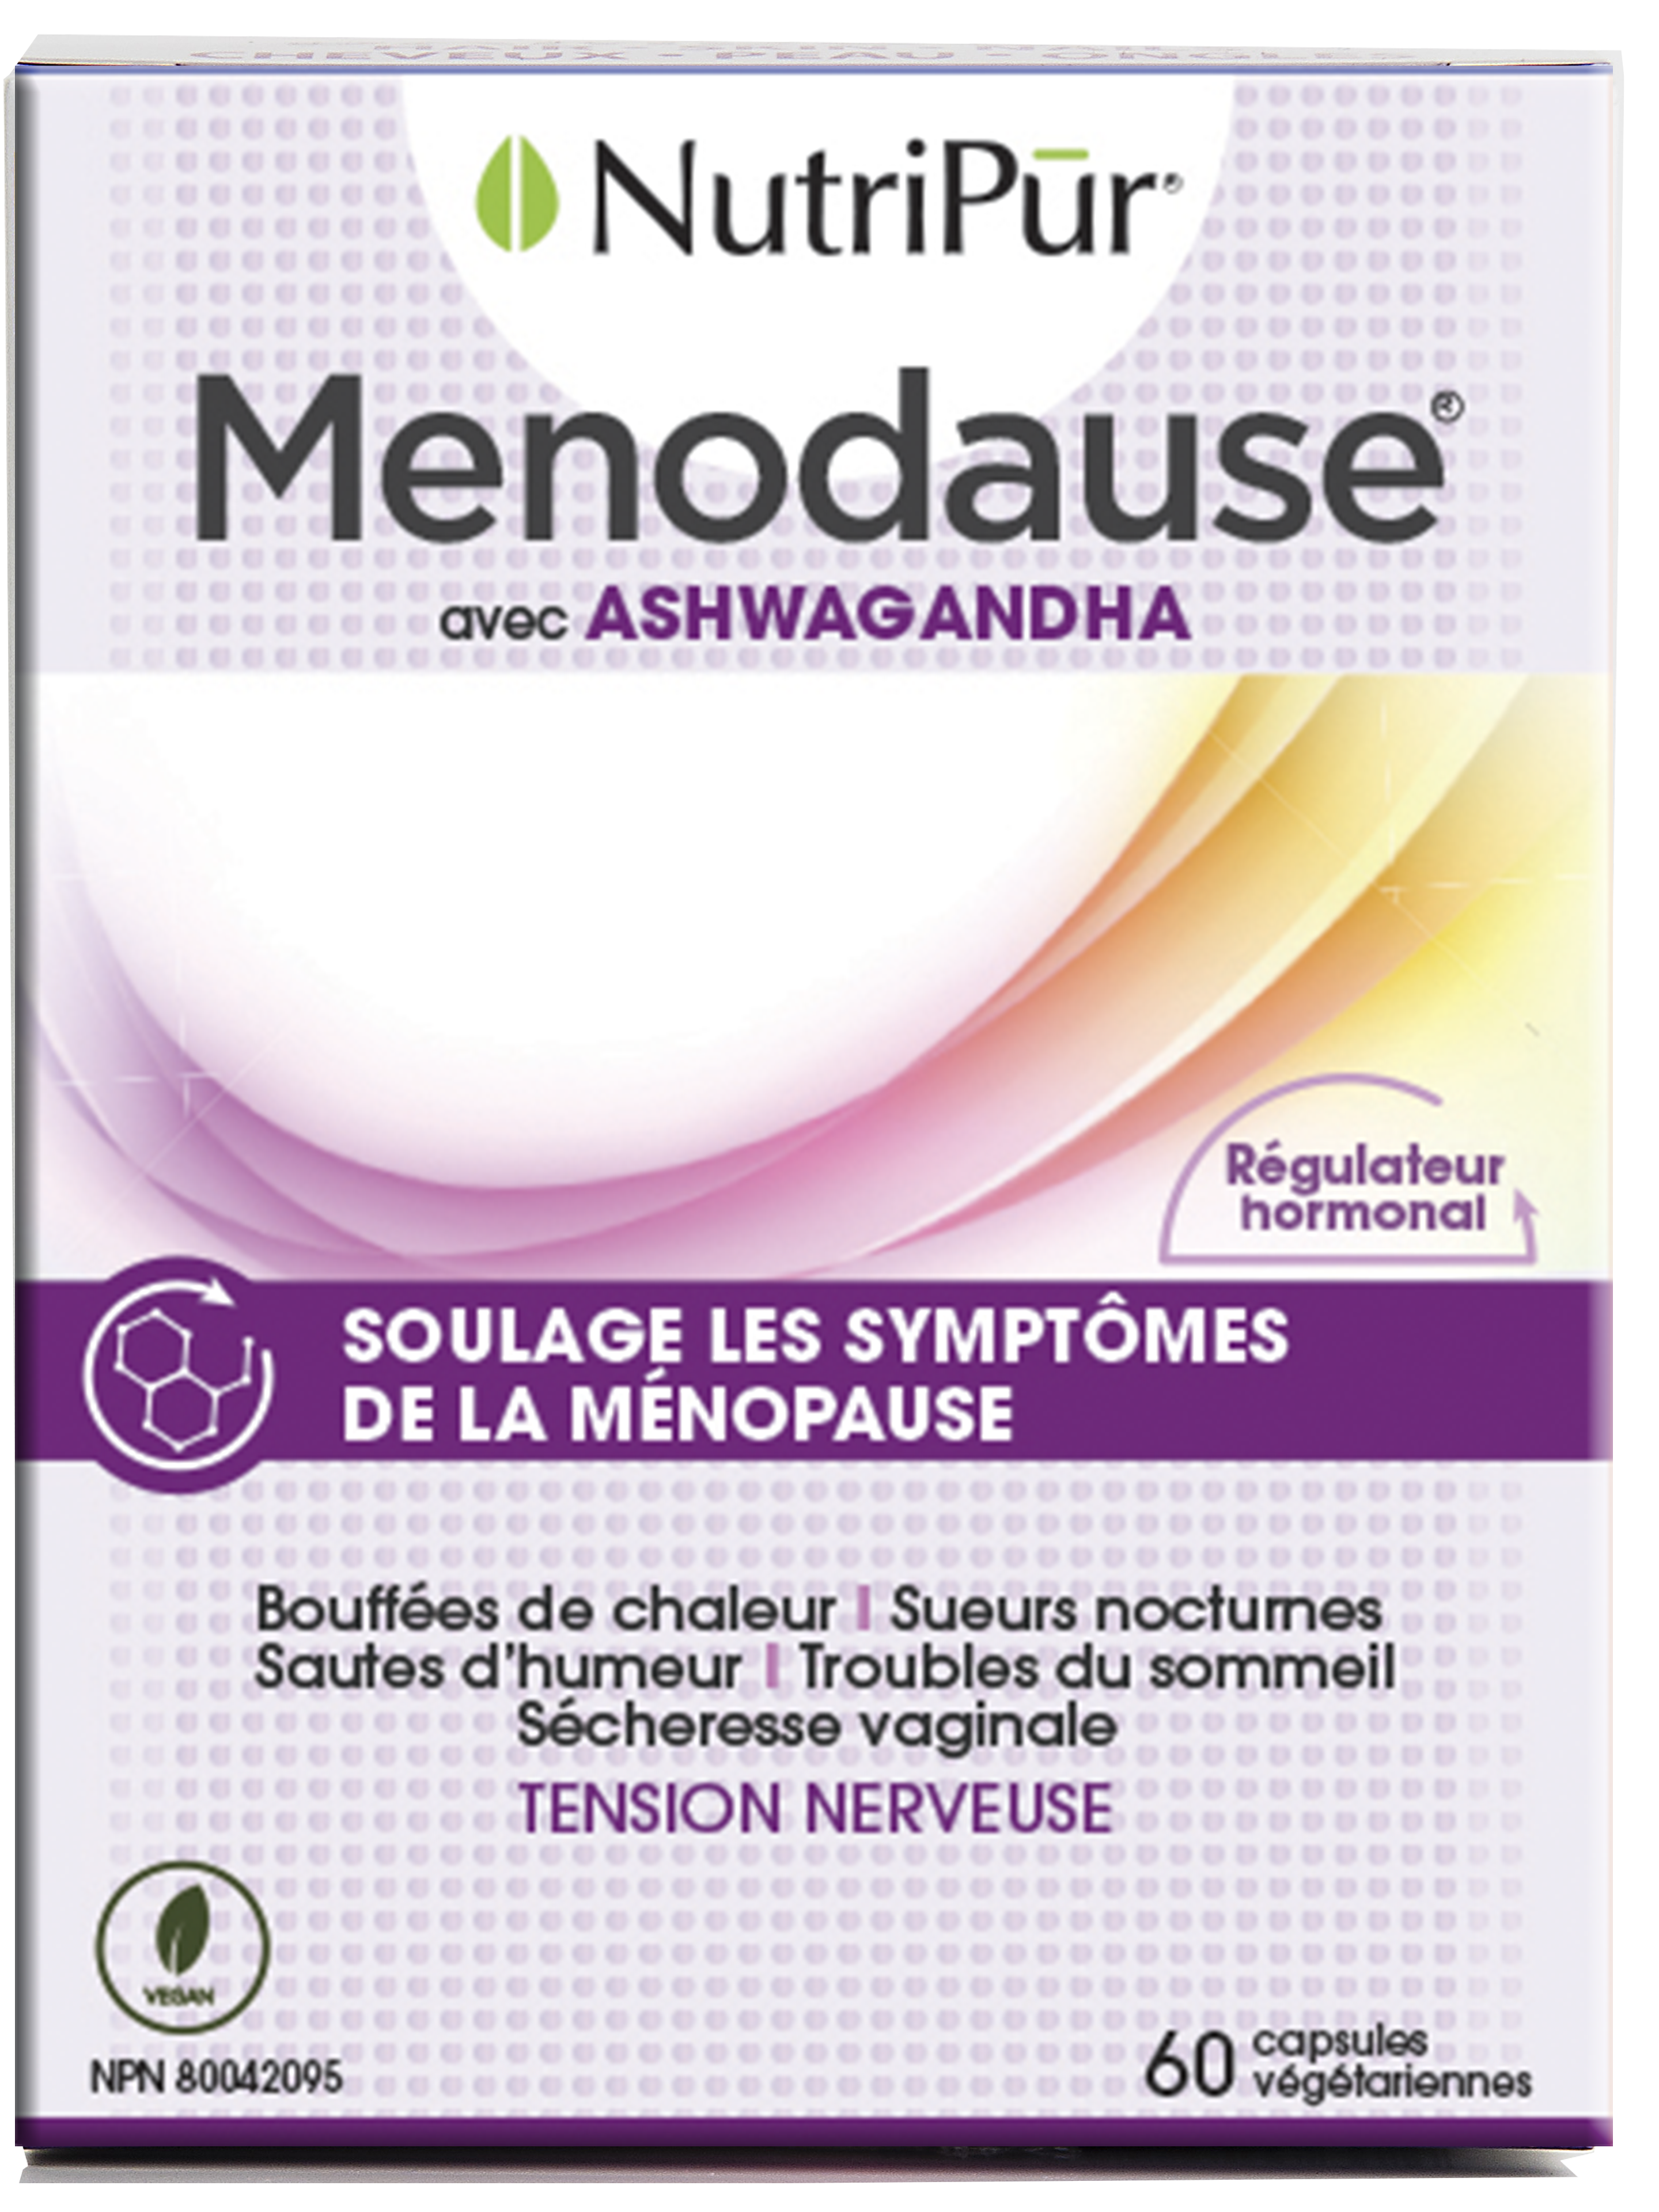 Menodause - Nutripur - avec ashawandha - soulage les symptomes de la menopause - bouffées de chaleures - sueurs nocturnes - sautes d'humeur - troubles du sommeil - sécheresse vaginale - tension nerveuse 